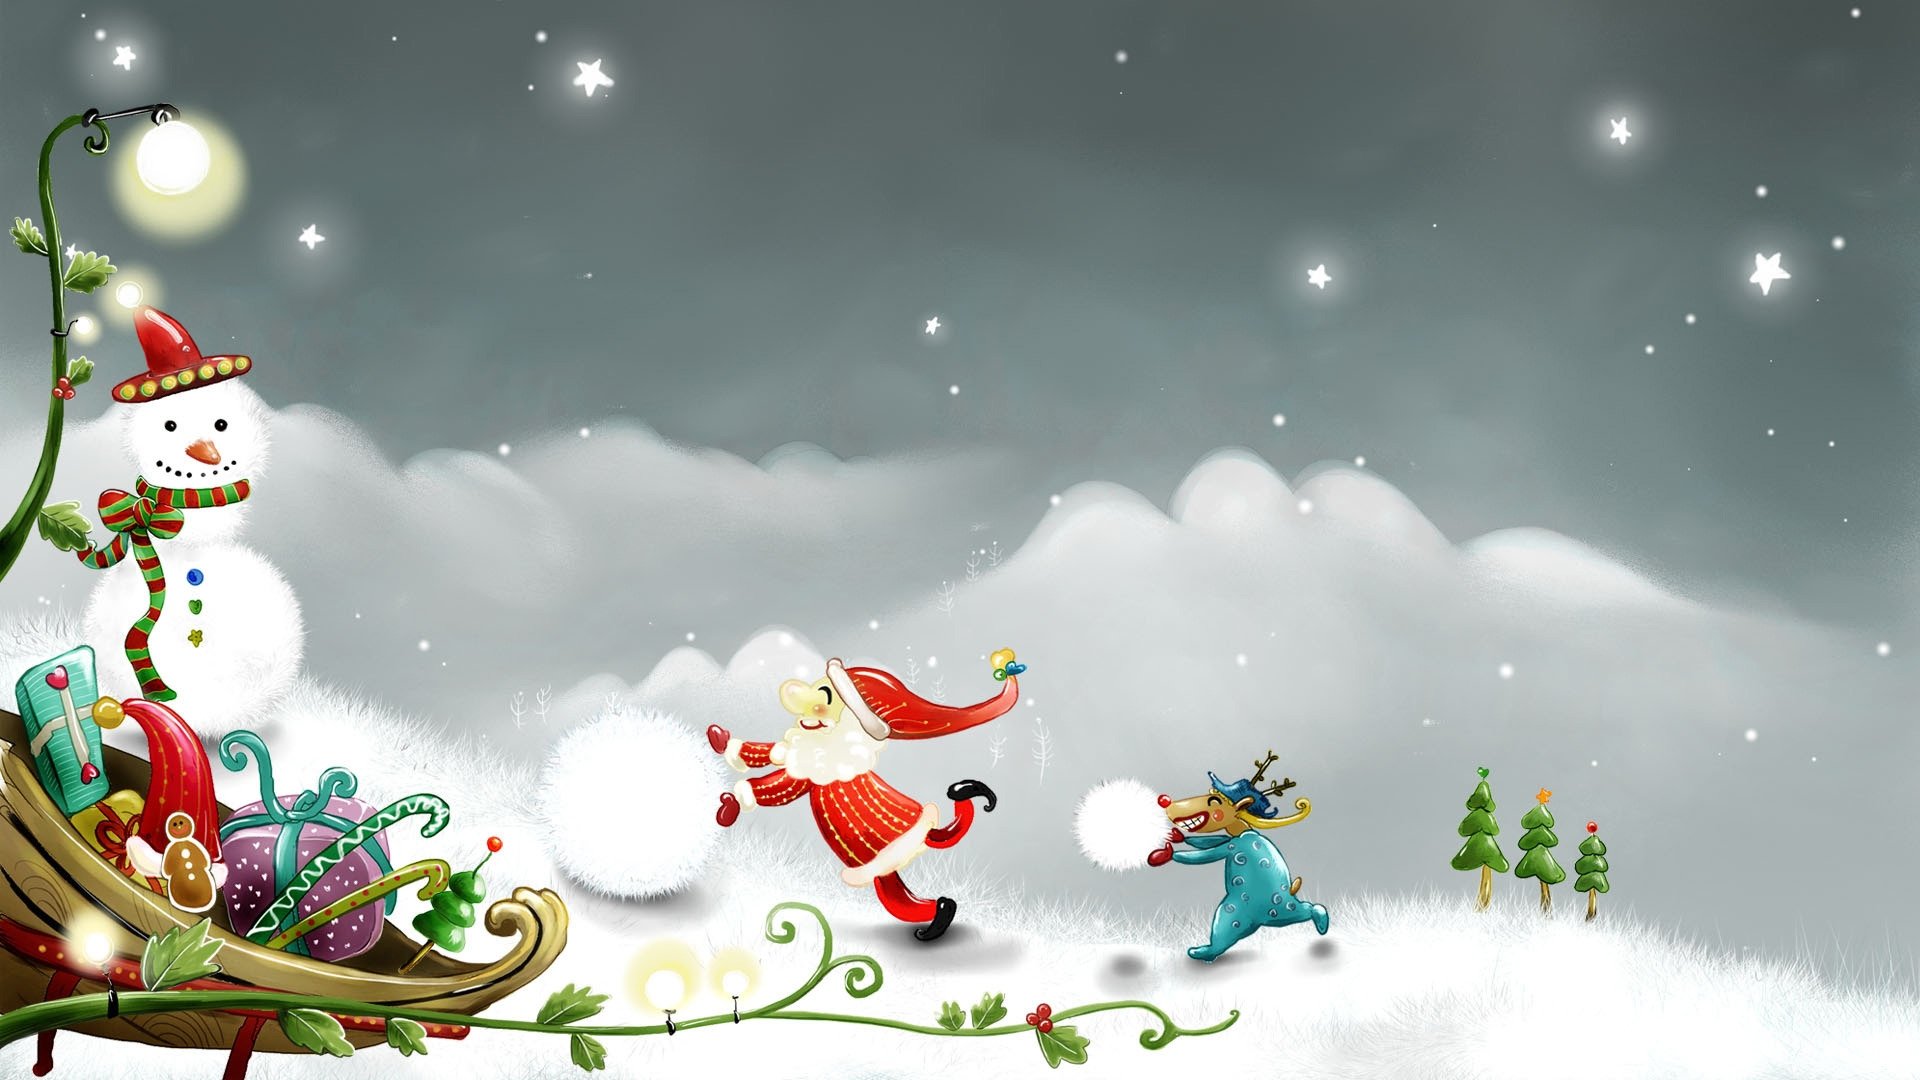 Snowman and Santa Claus 